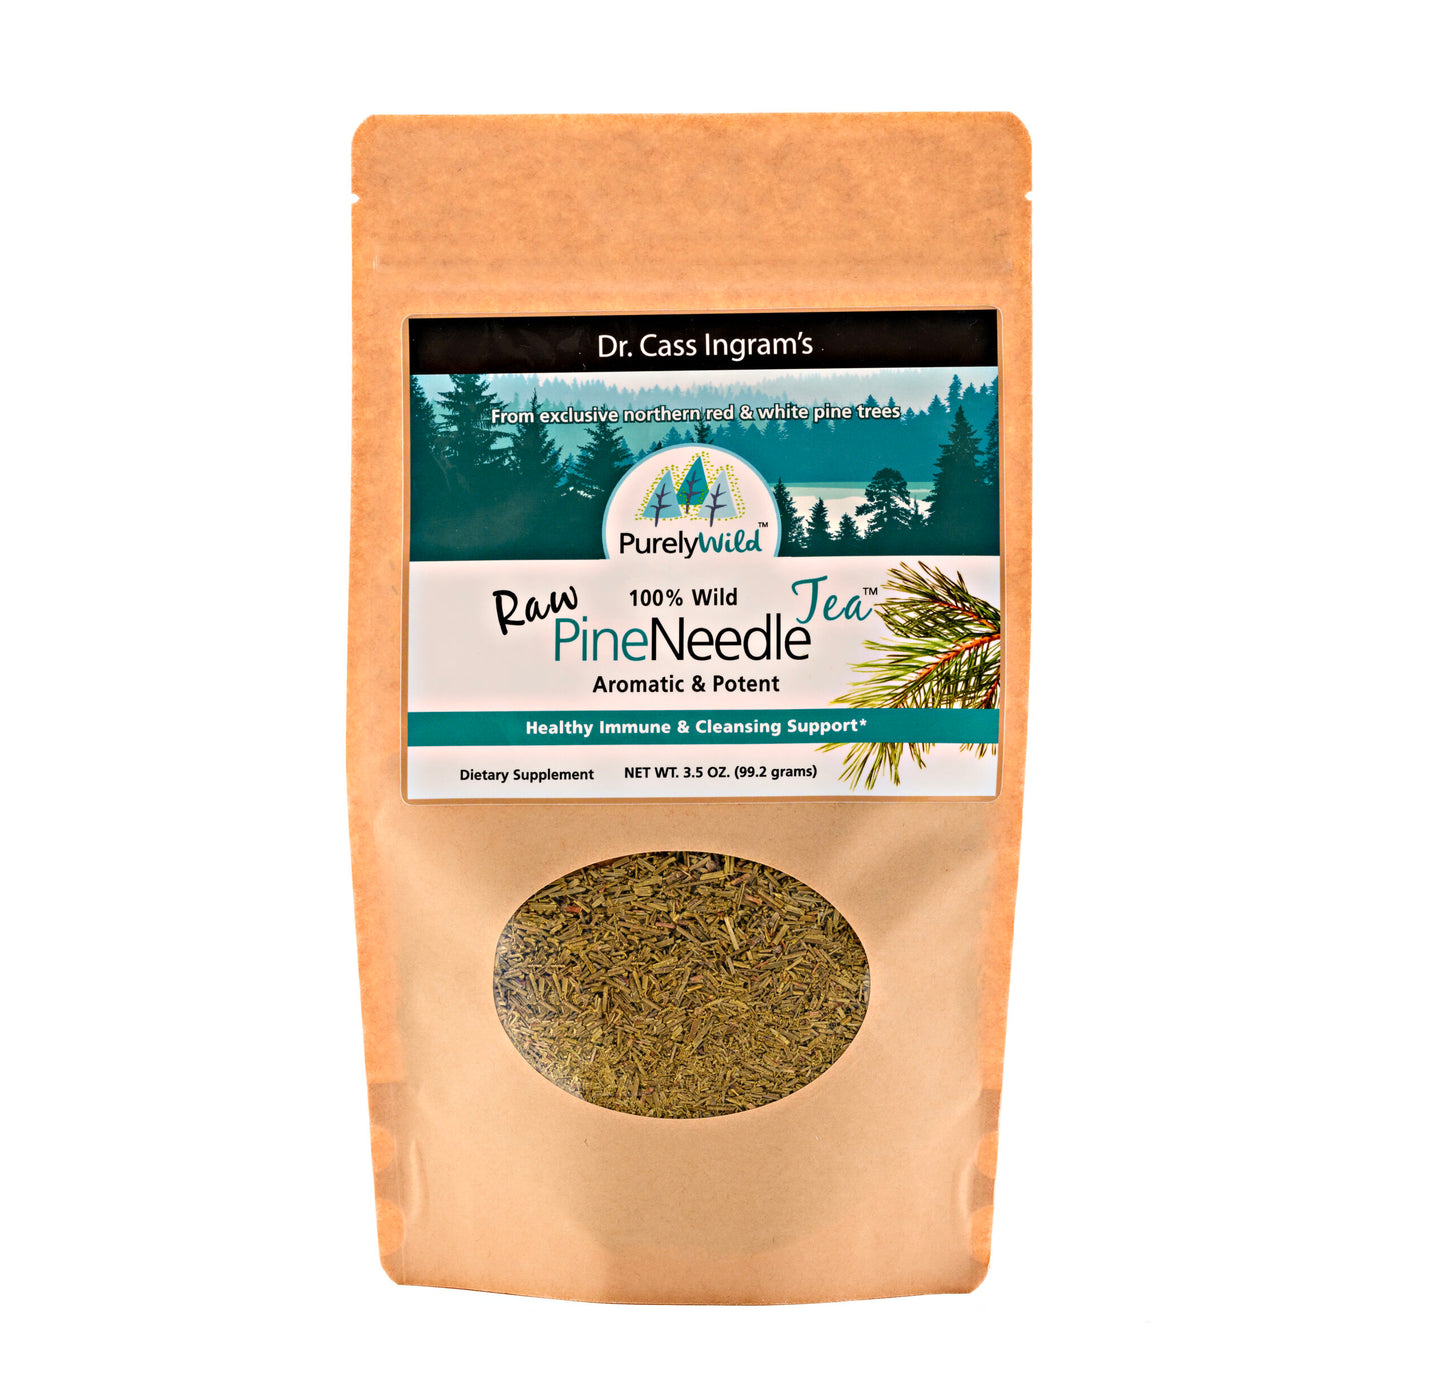 Purely Wild Pine Needle Tea - 3.5oz bag